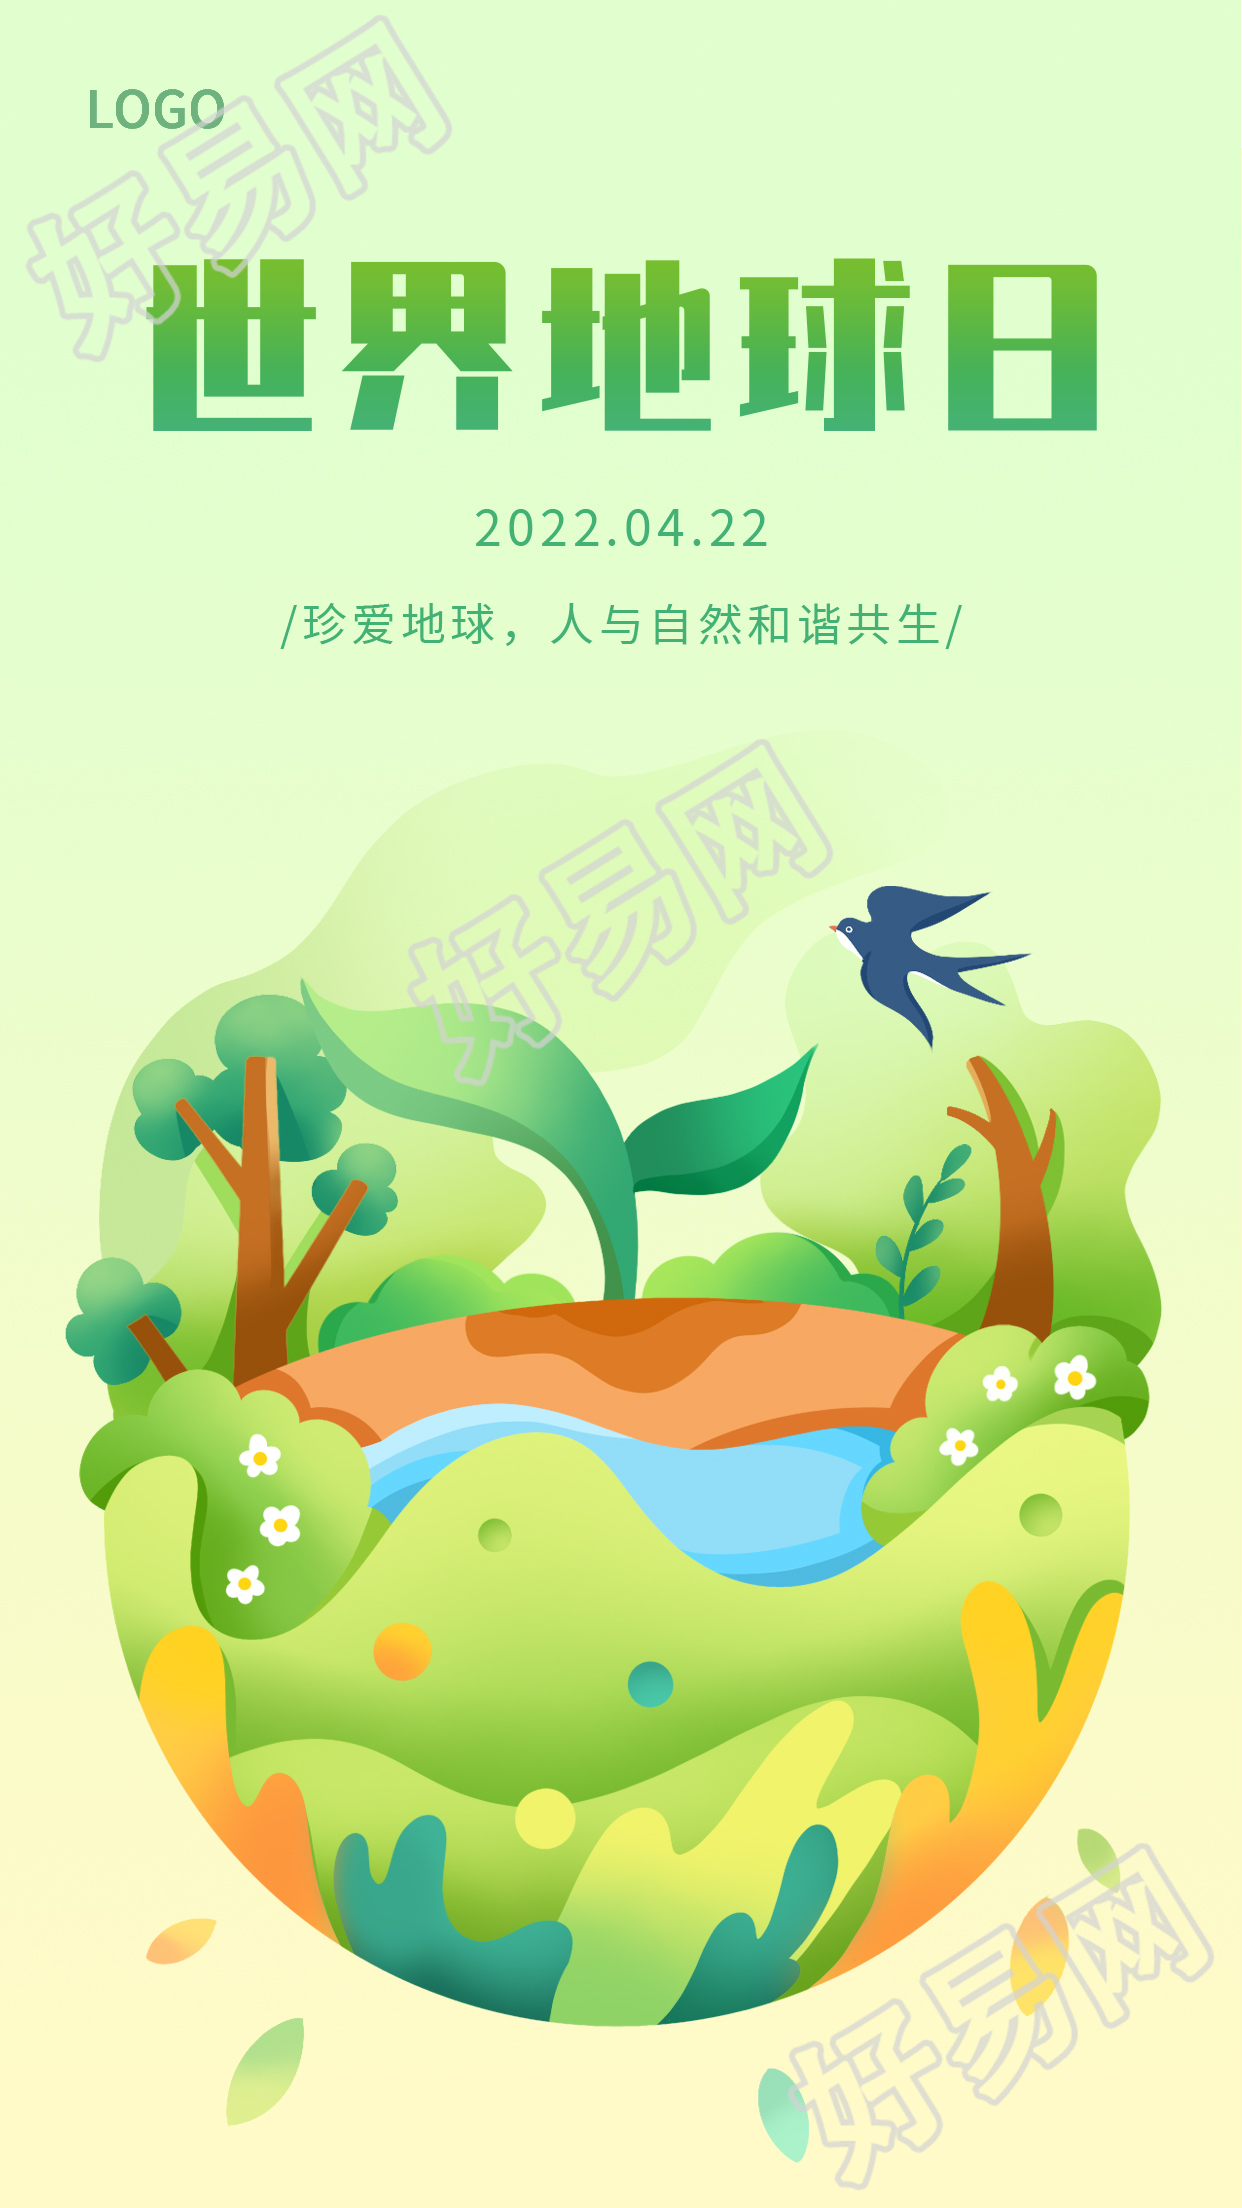 清新绿色环保主题世界地球日图片手机海报